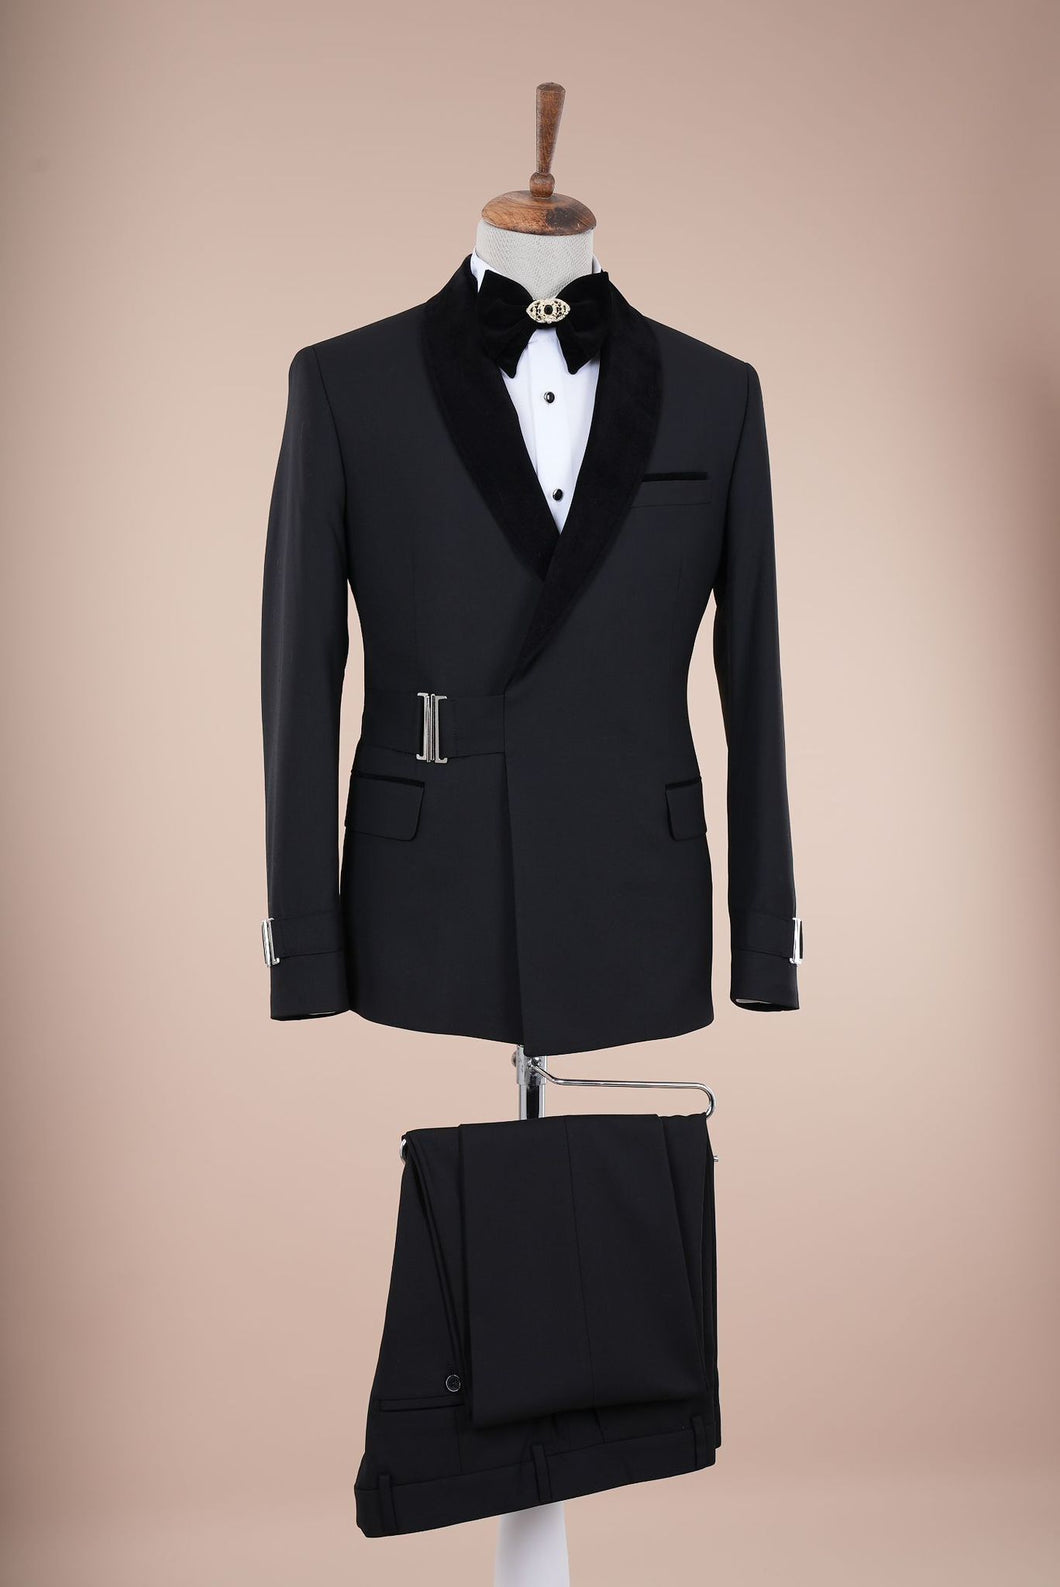 Noah Black Tuxedo Premium Collection (Wedding Edition)